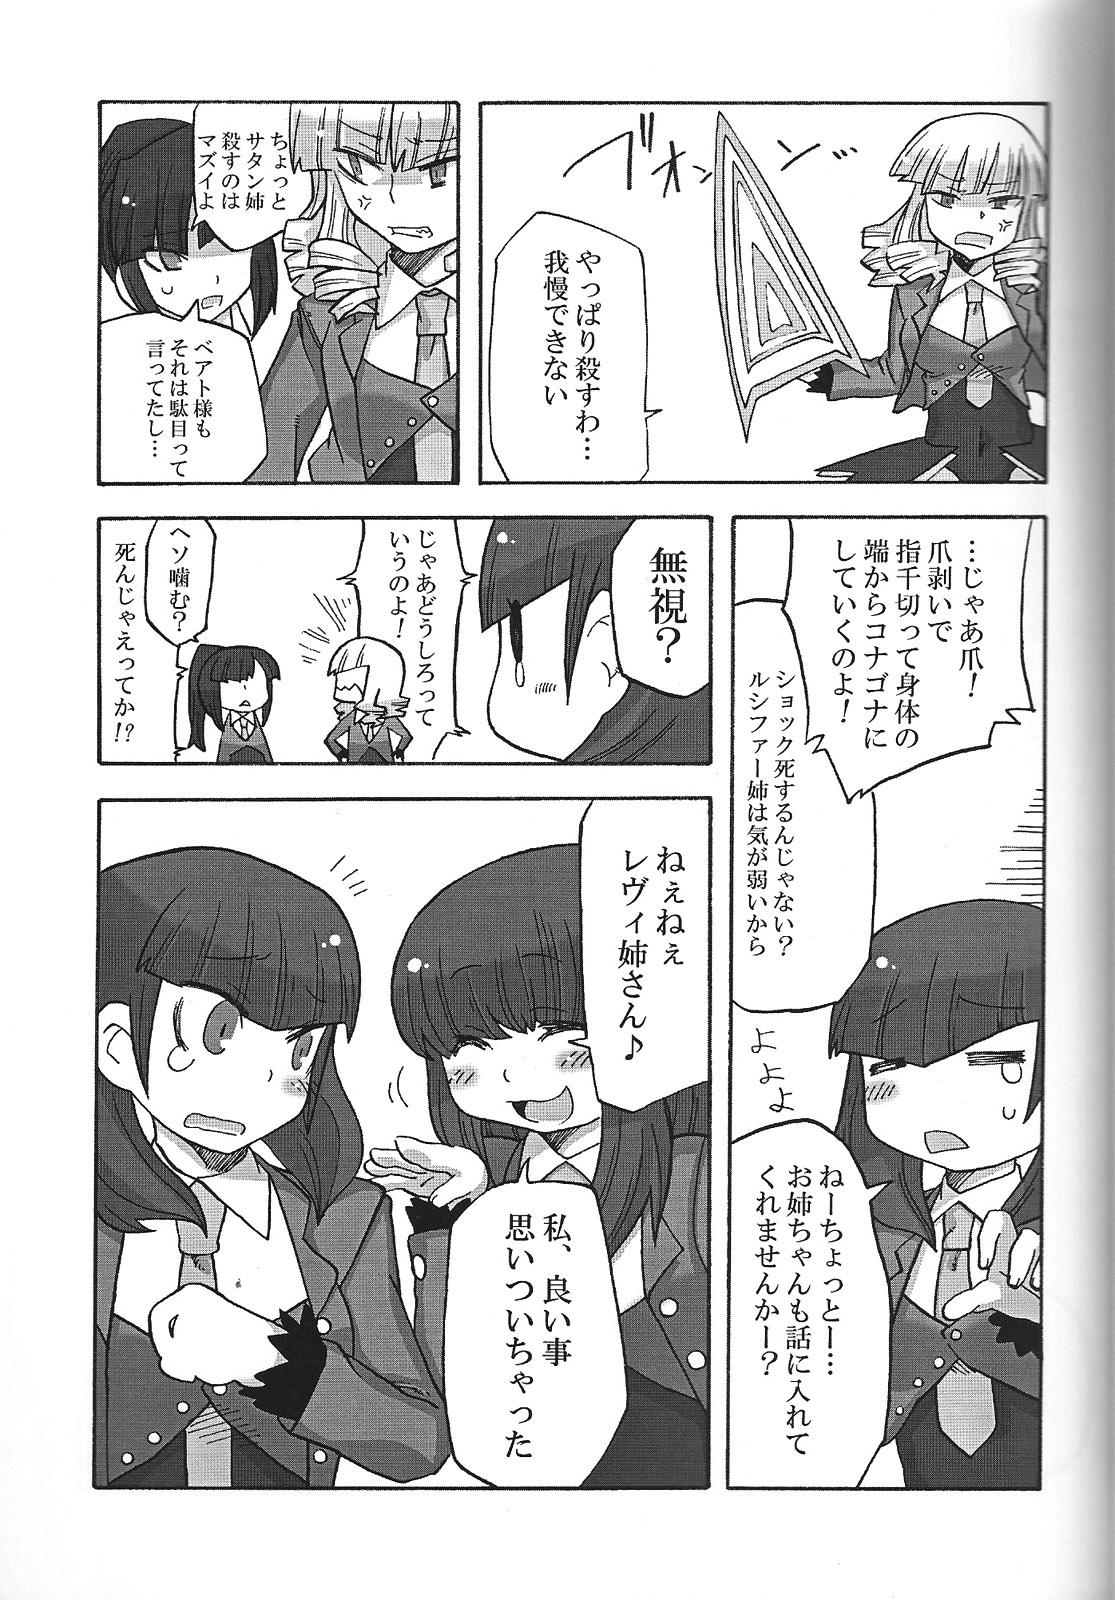 Rubbing Nakayoshi 7 Shimai - Umineko no naku koro ni Ftvgirls - Page 12